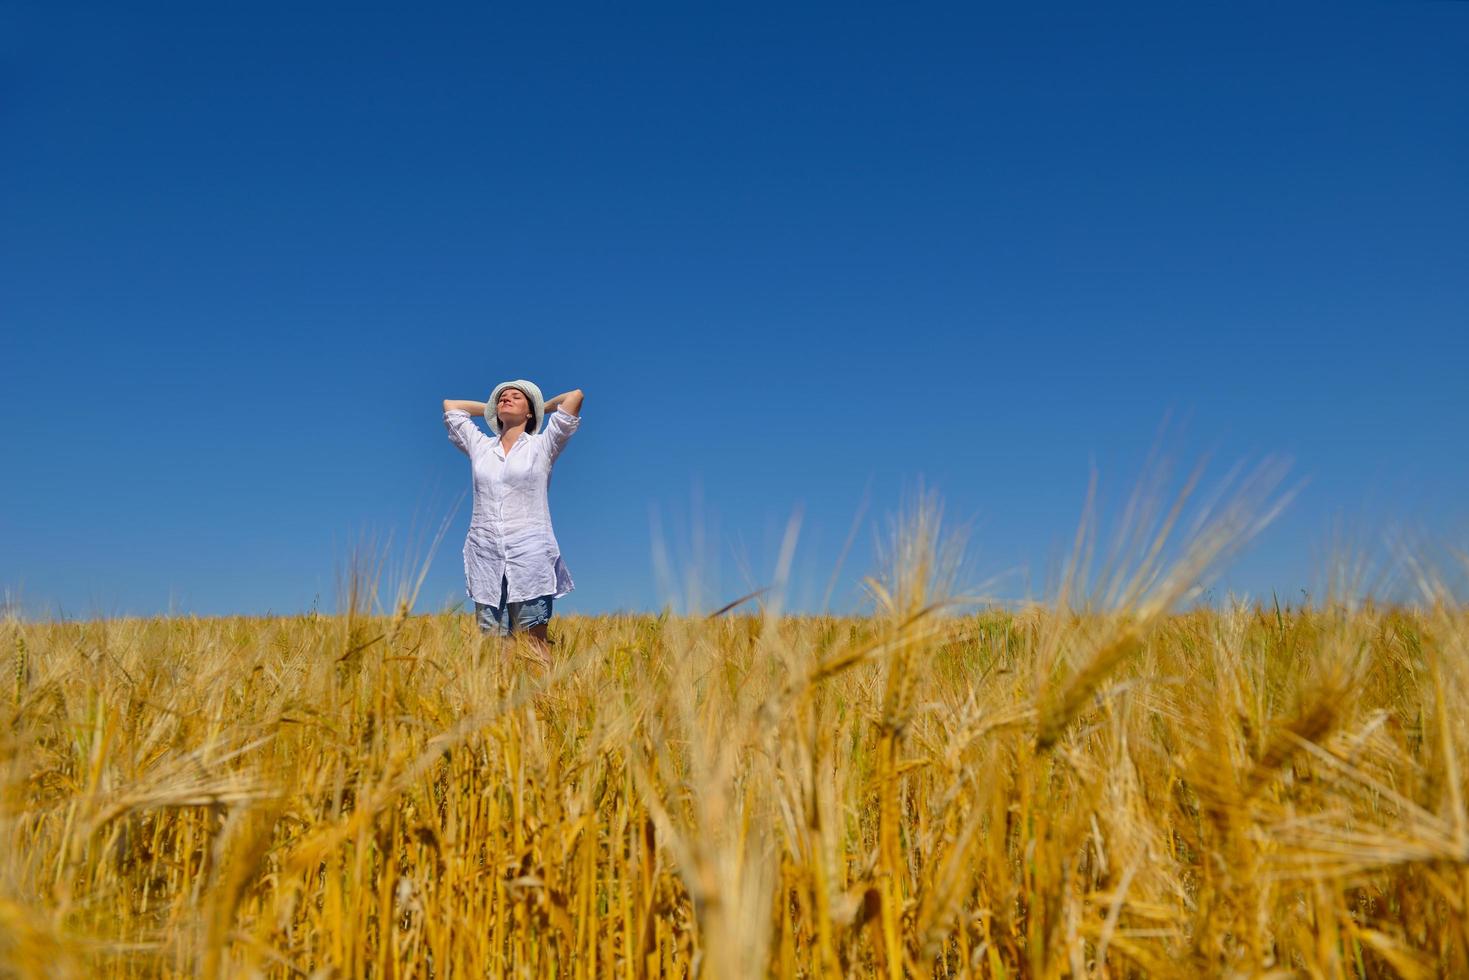 giovane donna nel campo di grano in estate foto